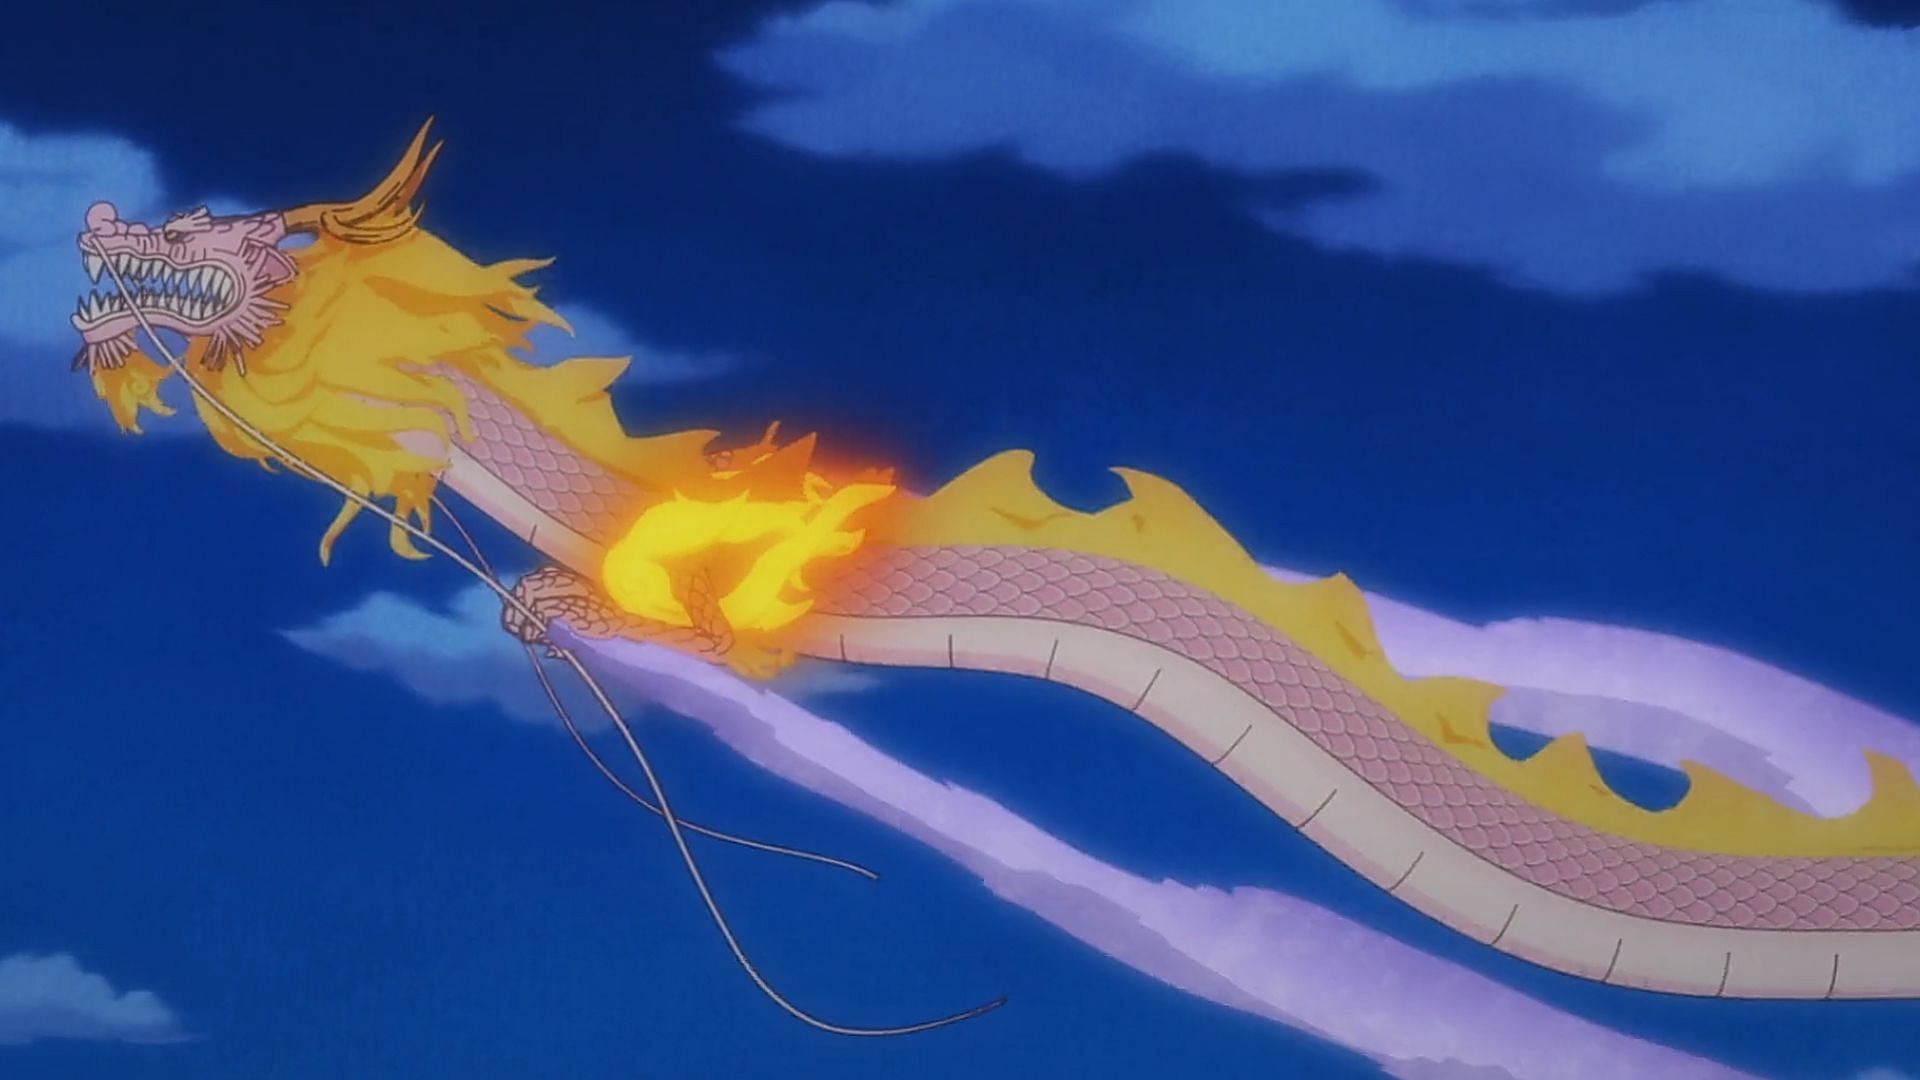 Momonosuke pulling Onigashima in One Piece episode 1060 (Image via Toei Animation)